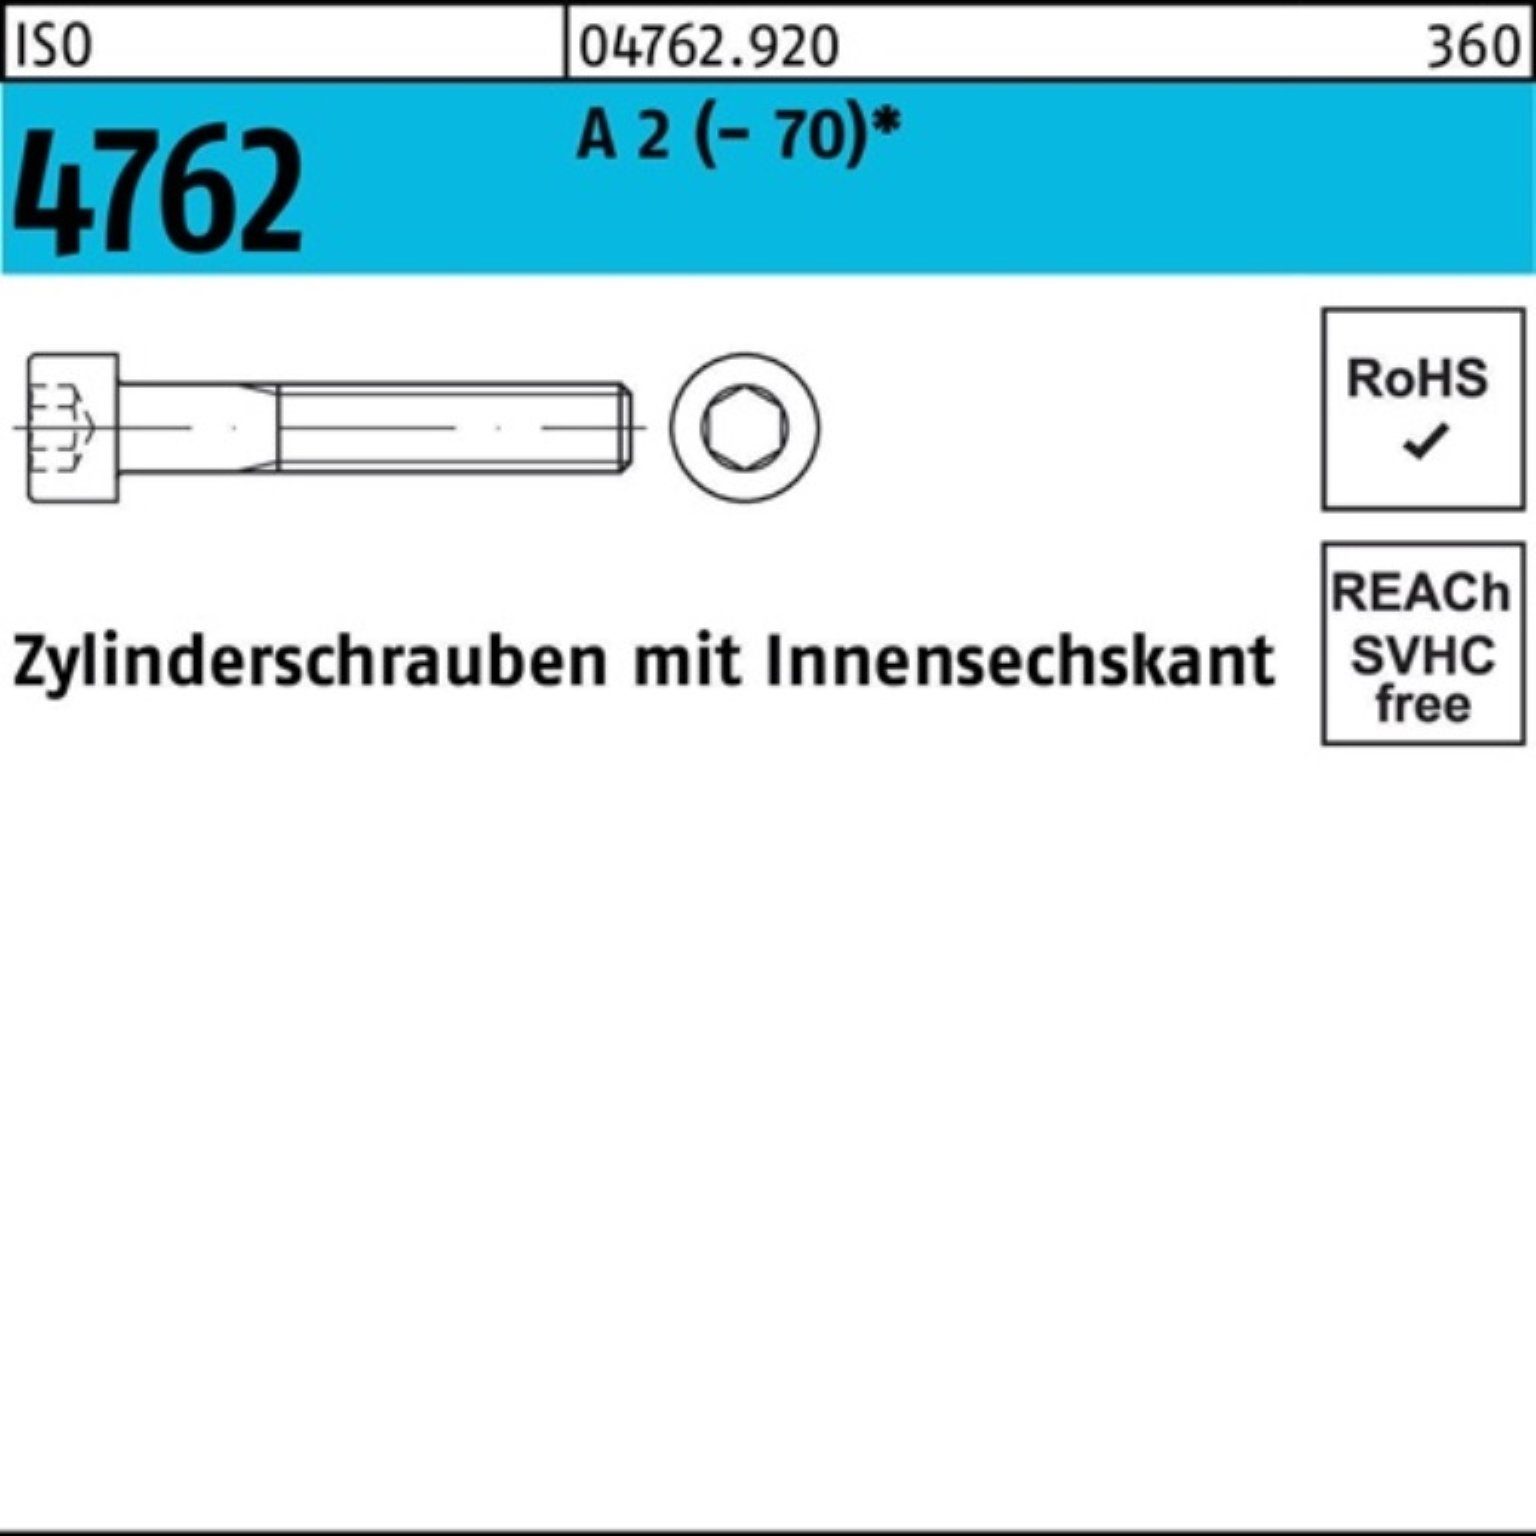 A Pack 4762 Zylinderschraube 100er Zylinderschraube M16x 160 Reyher Innen-6kt 2 ISO S (70) 1